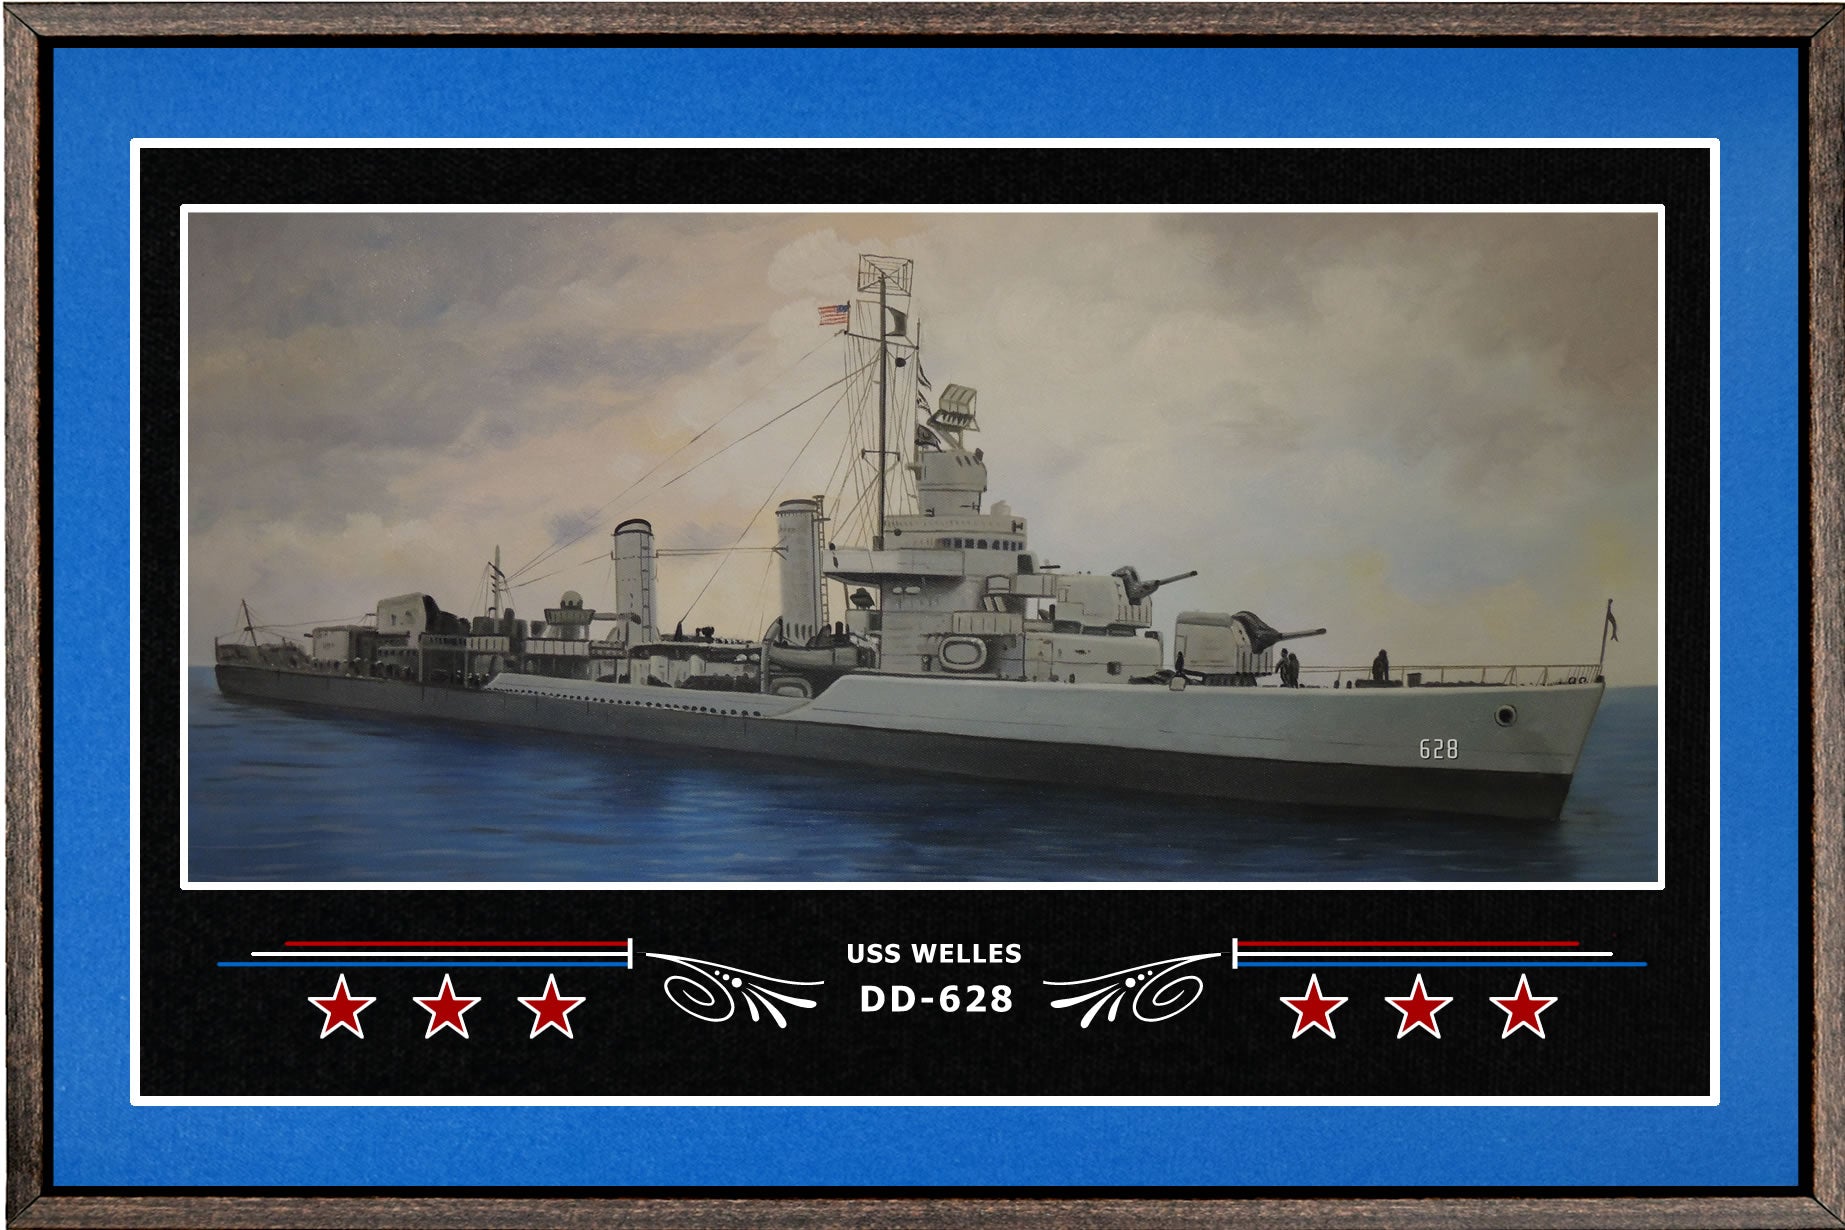 USS WELLES DD 628 BOX FRAMED CANVAS ART BLUE